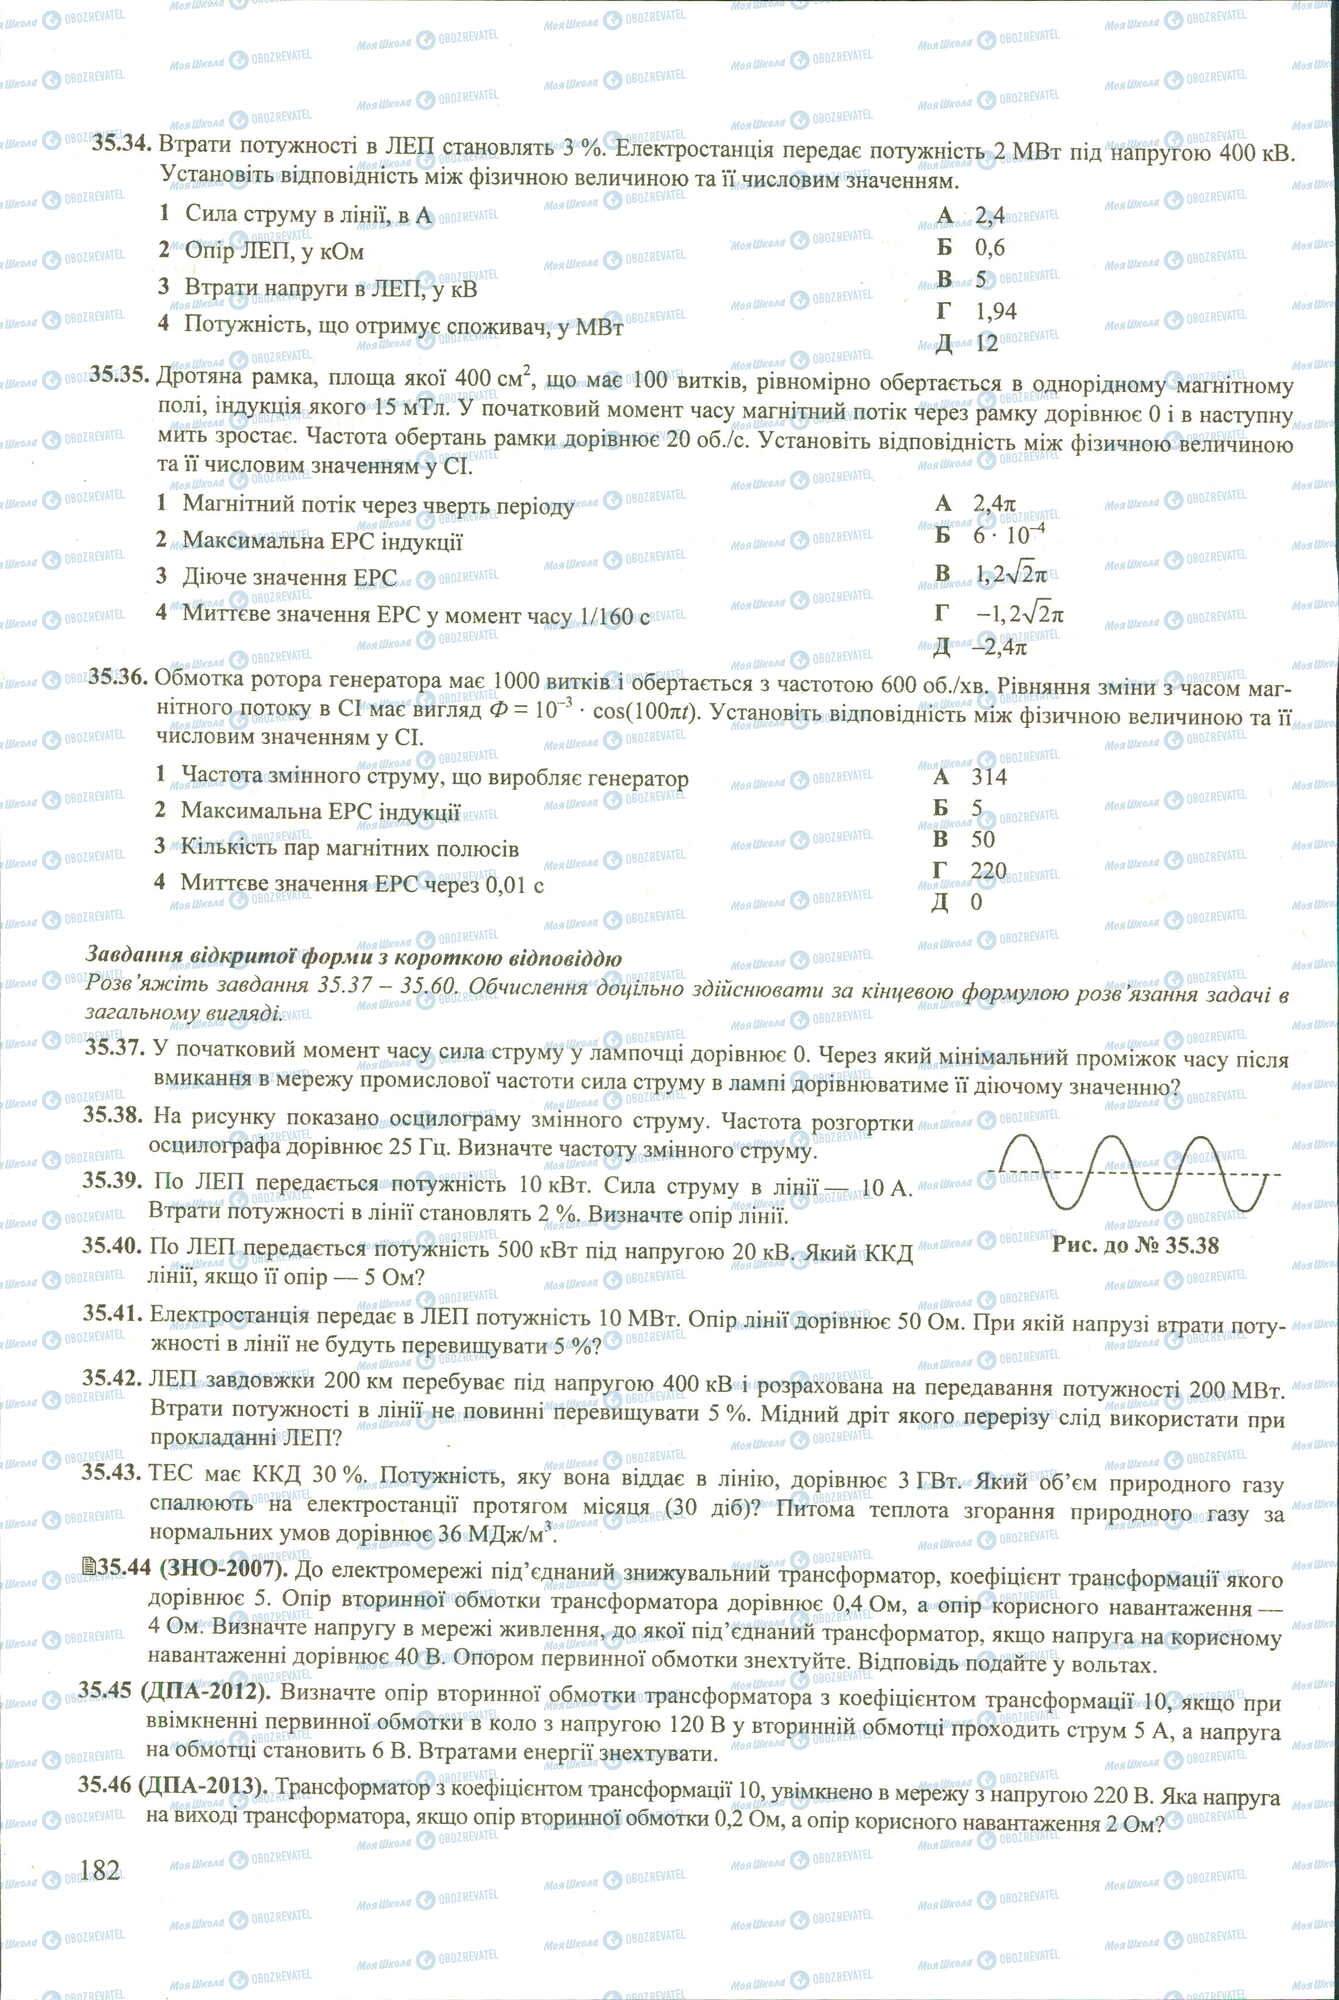 ЗНО Физика 11 класс страница 34-46